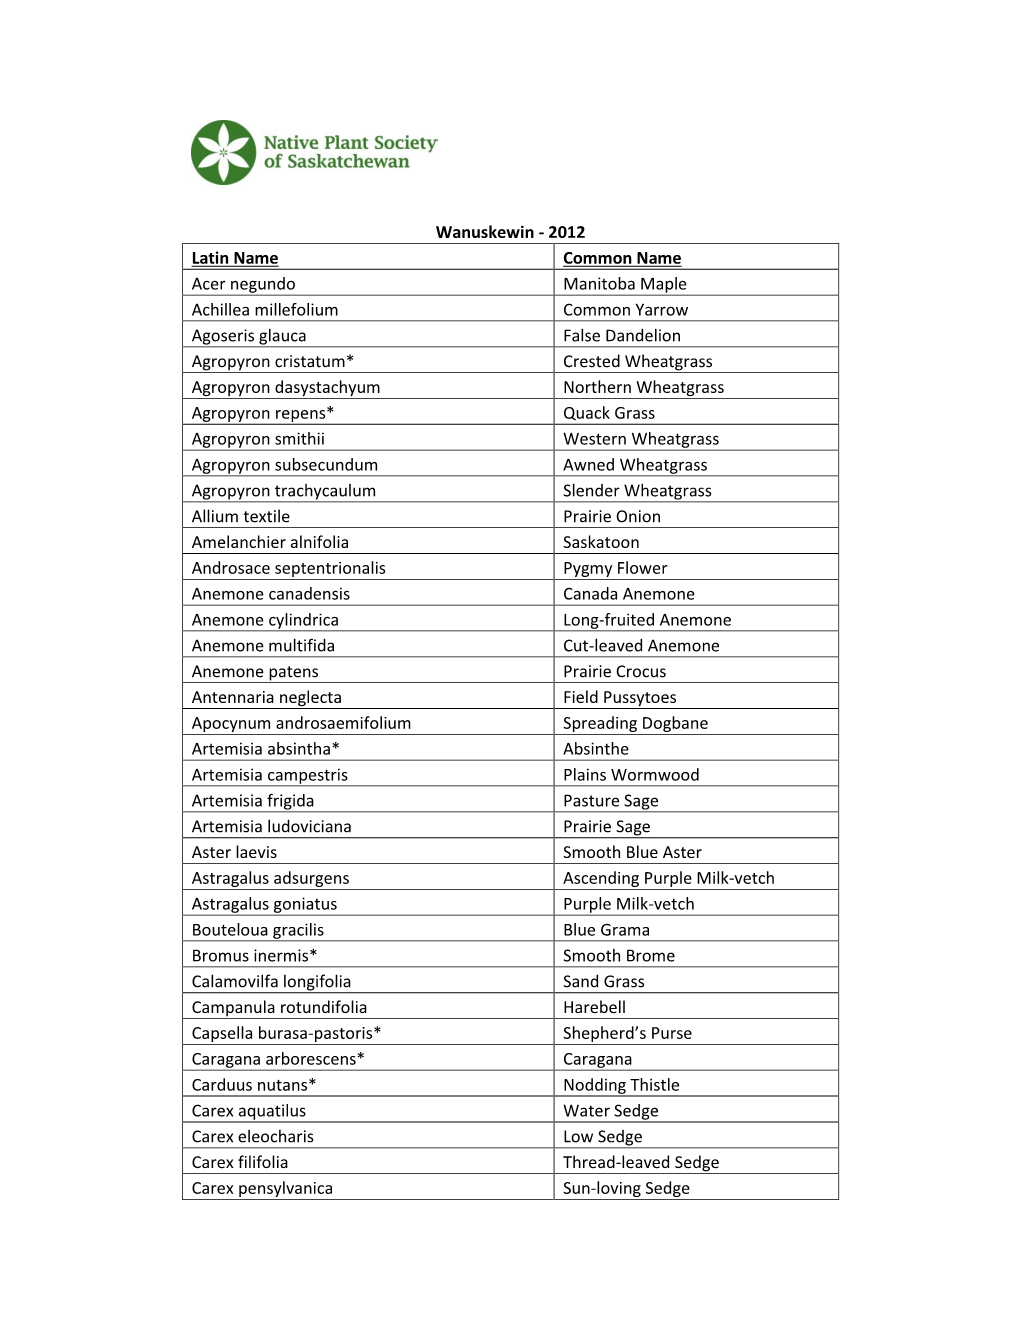 Wanuskewin Plant List